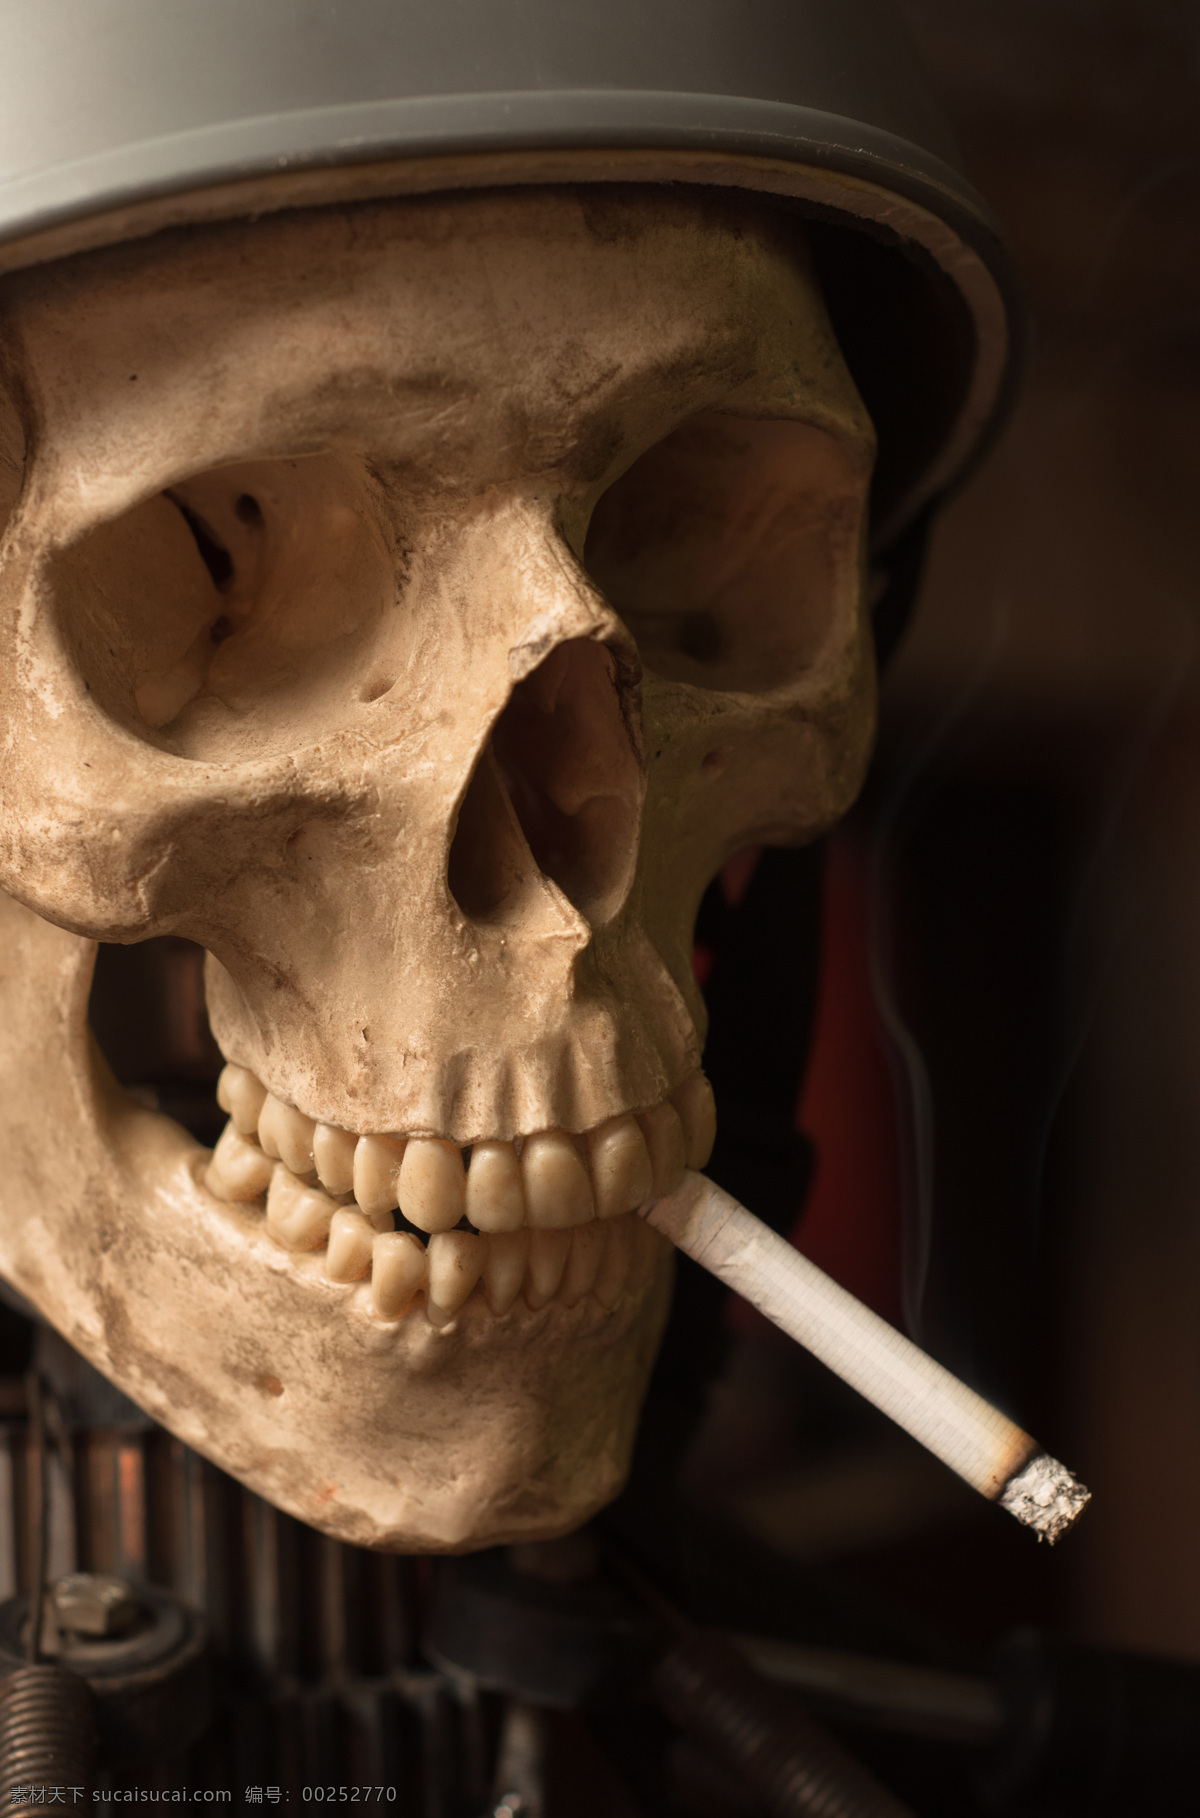 抽烟 骷髅 吸烟的骷髅 钢盔 头盔 人类头骨 恐怖 头骨摄影 其他类别 生活百科